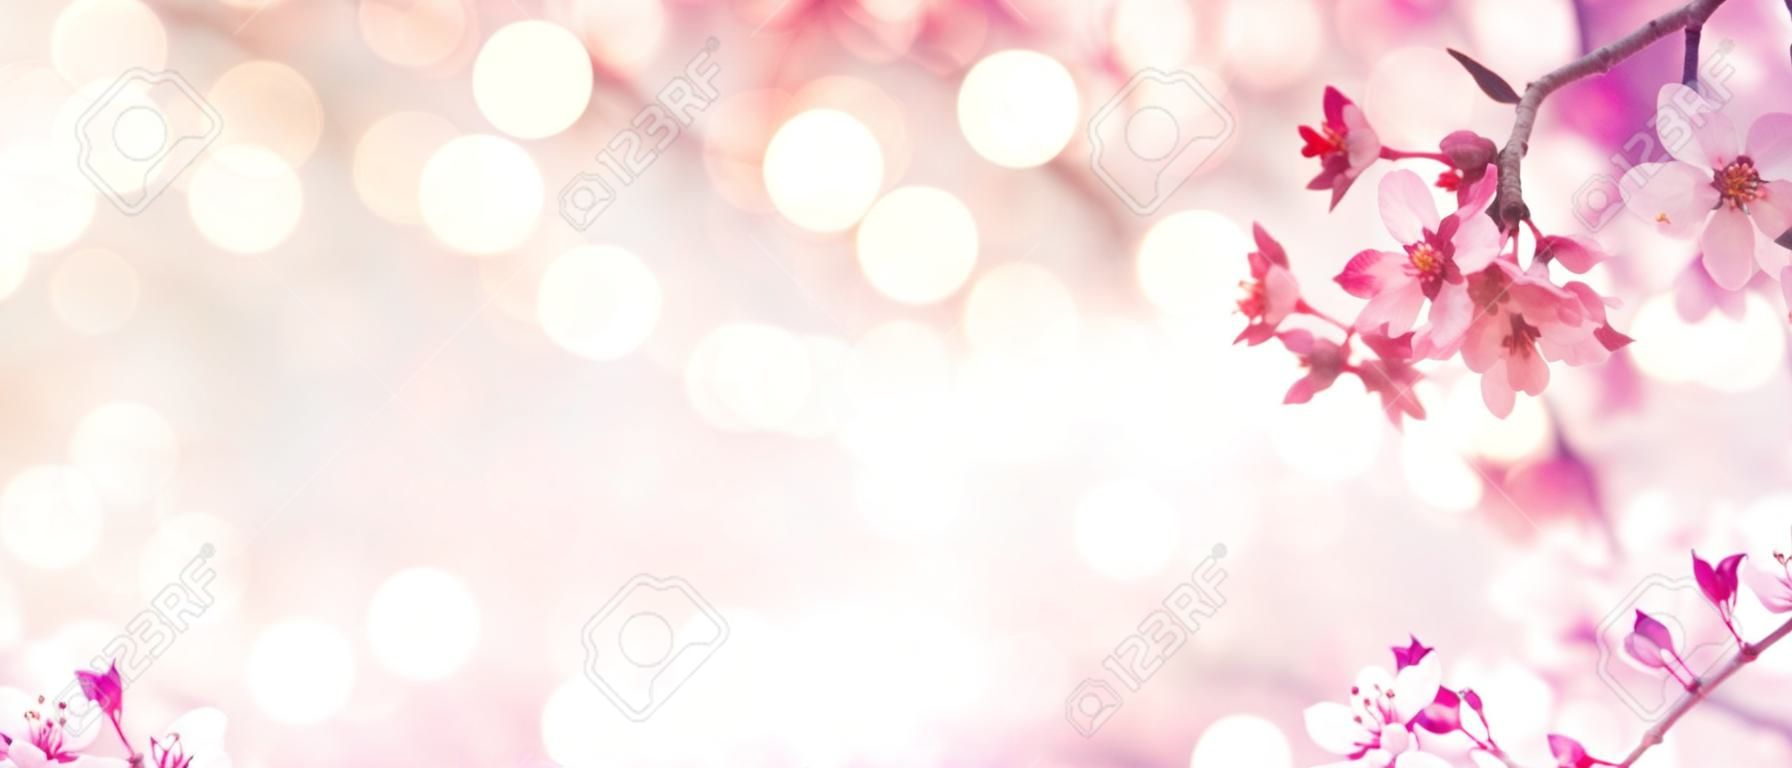 Borda da flor da mola com árvore florescente cor-de-rosa